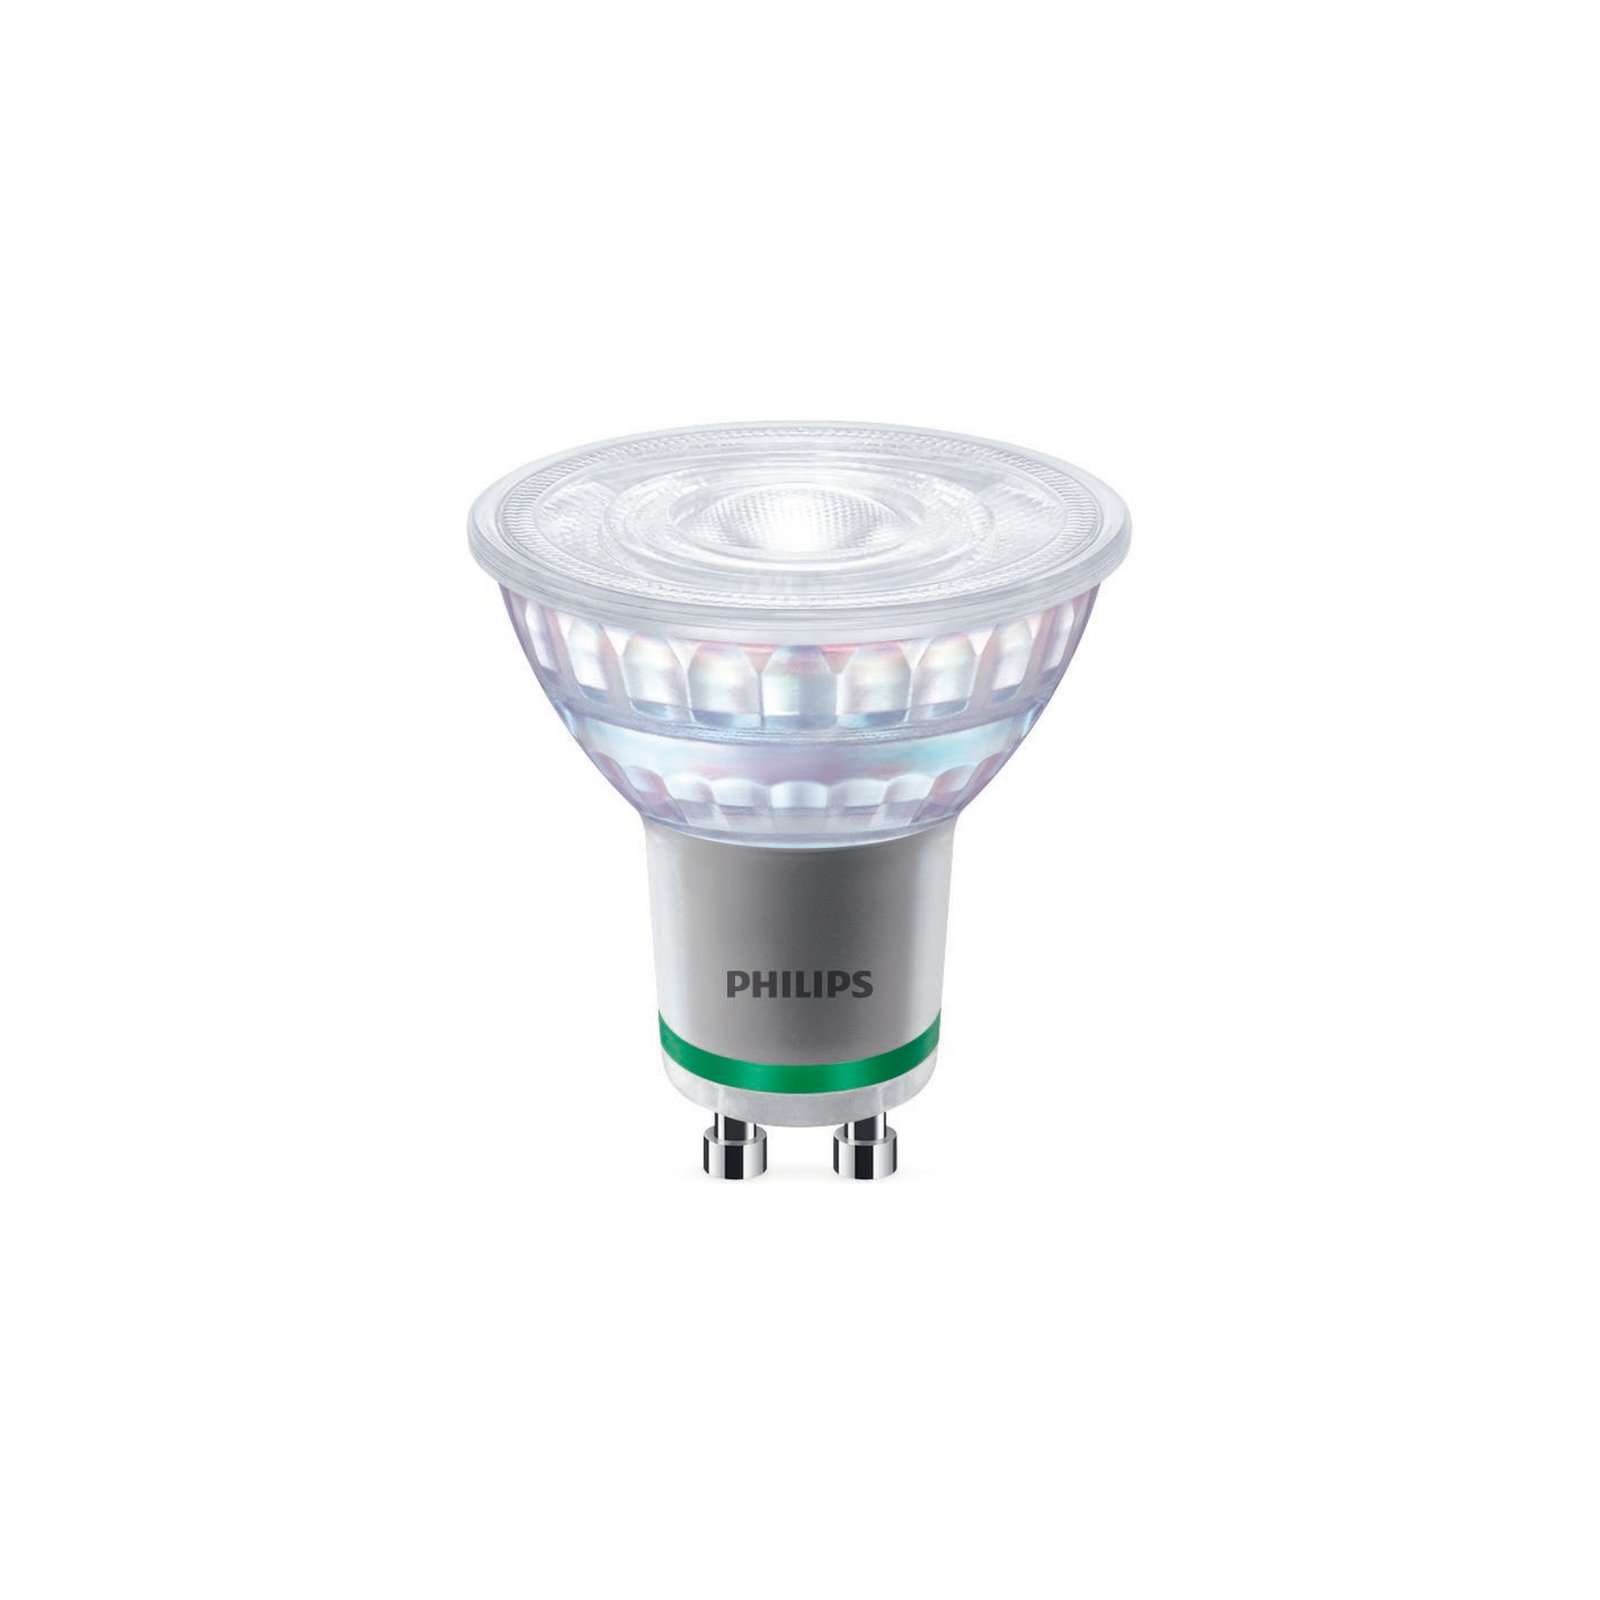 Philips GU10 reflector LED bulb 2.1W 375lm 4,000K